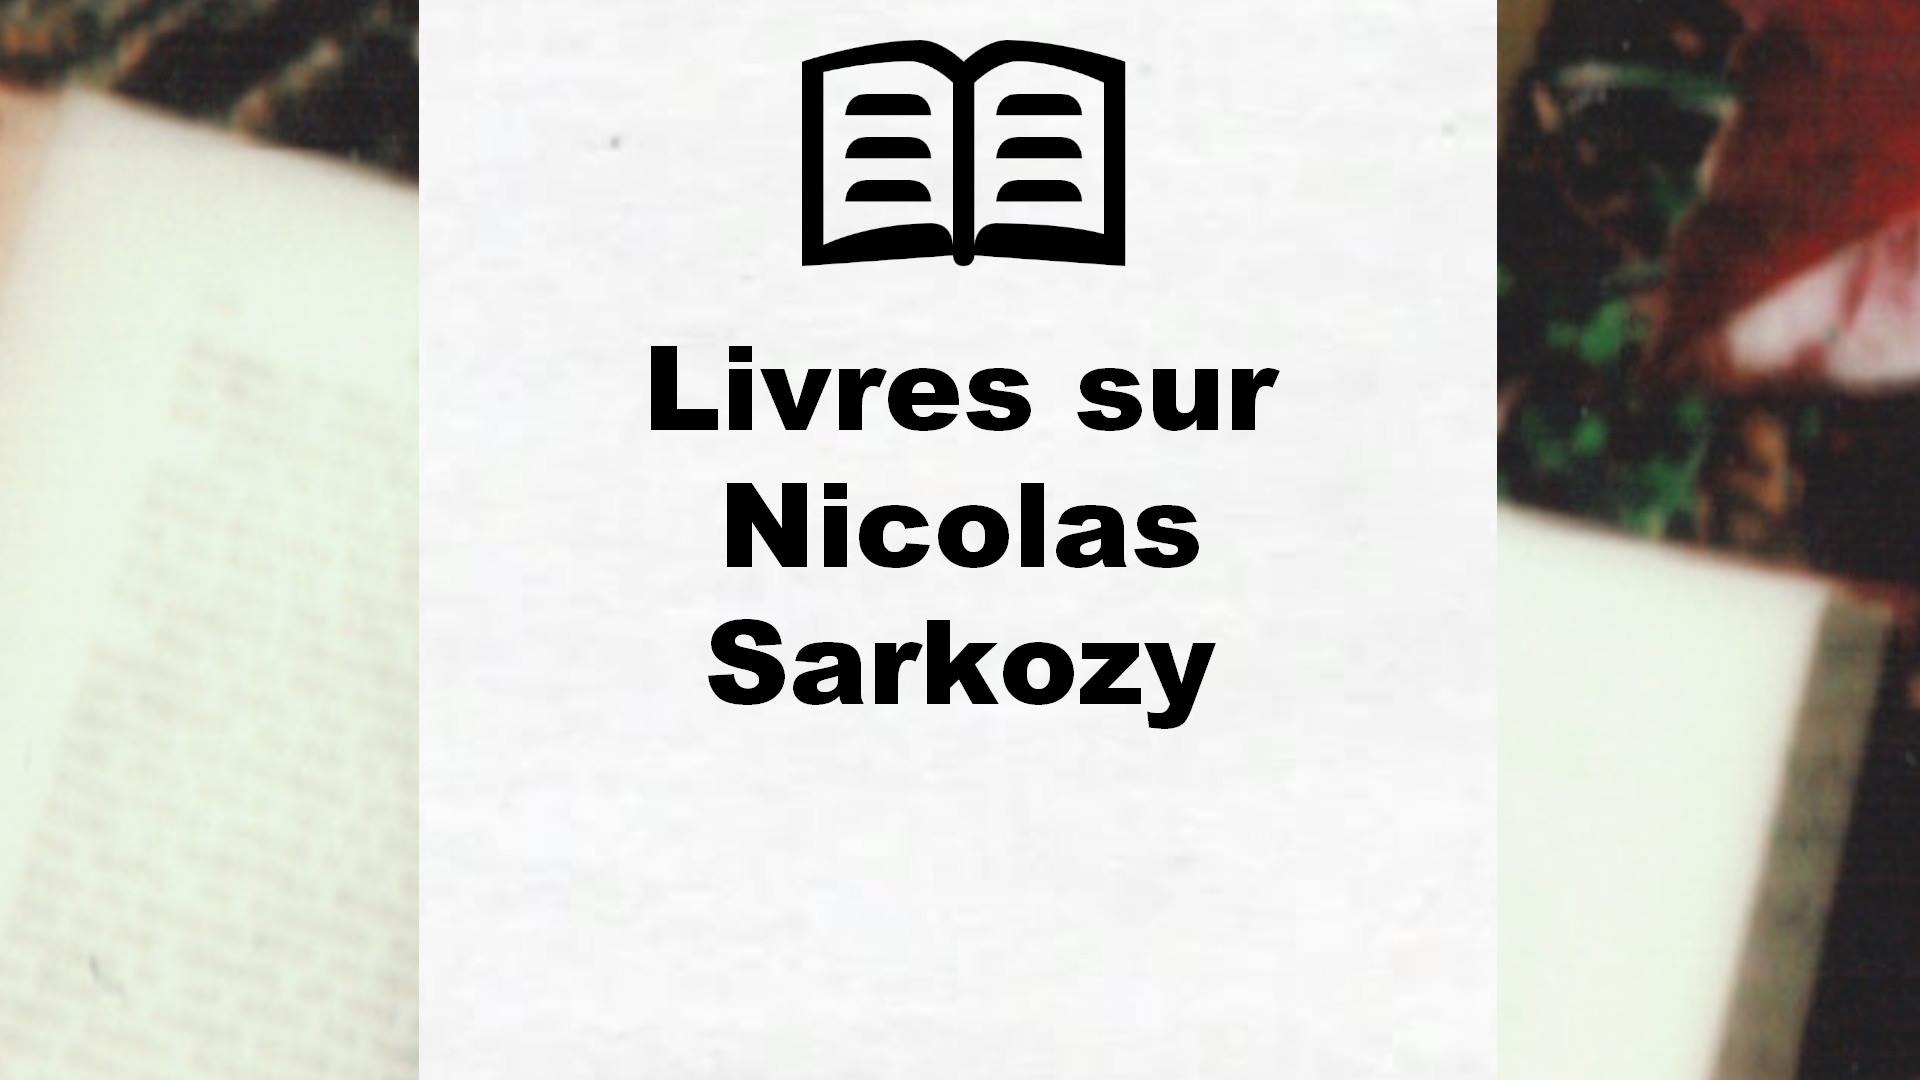 Livres sur Nicolas Sarkozy